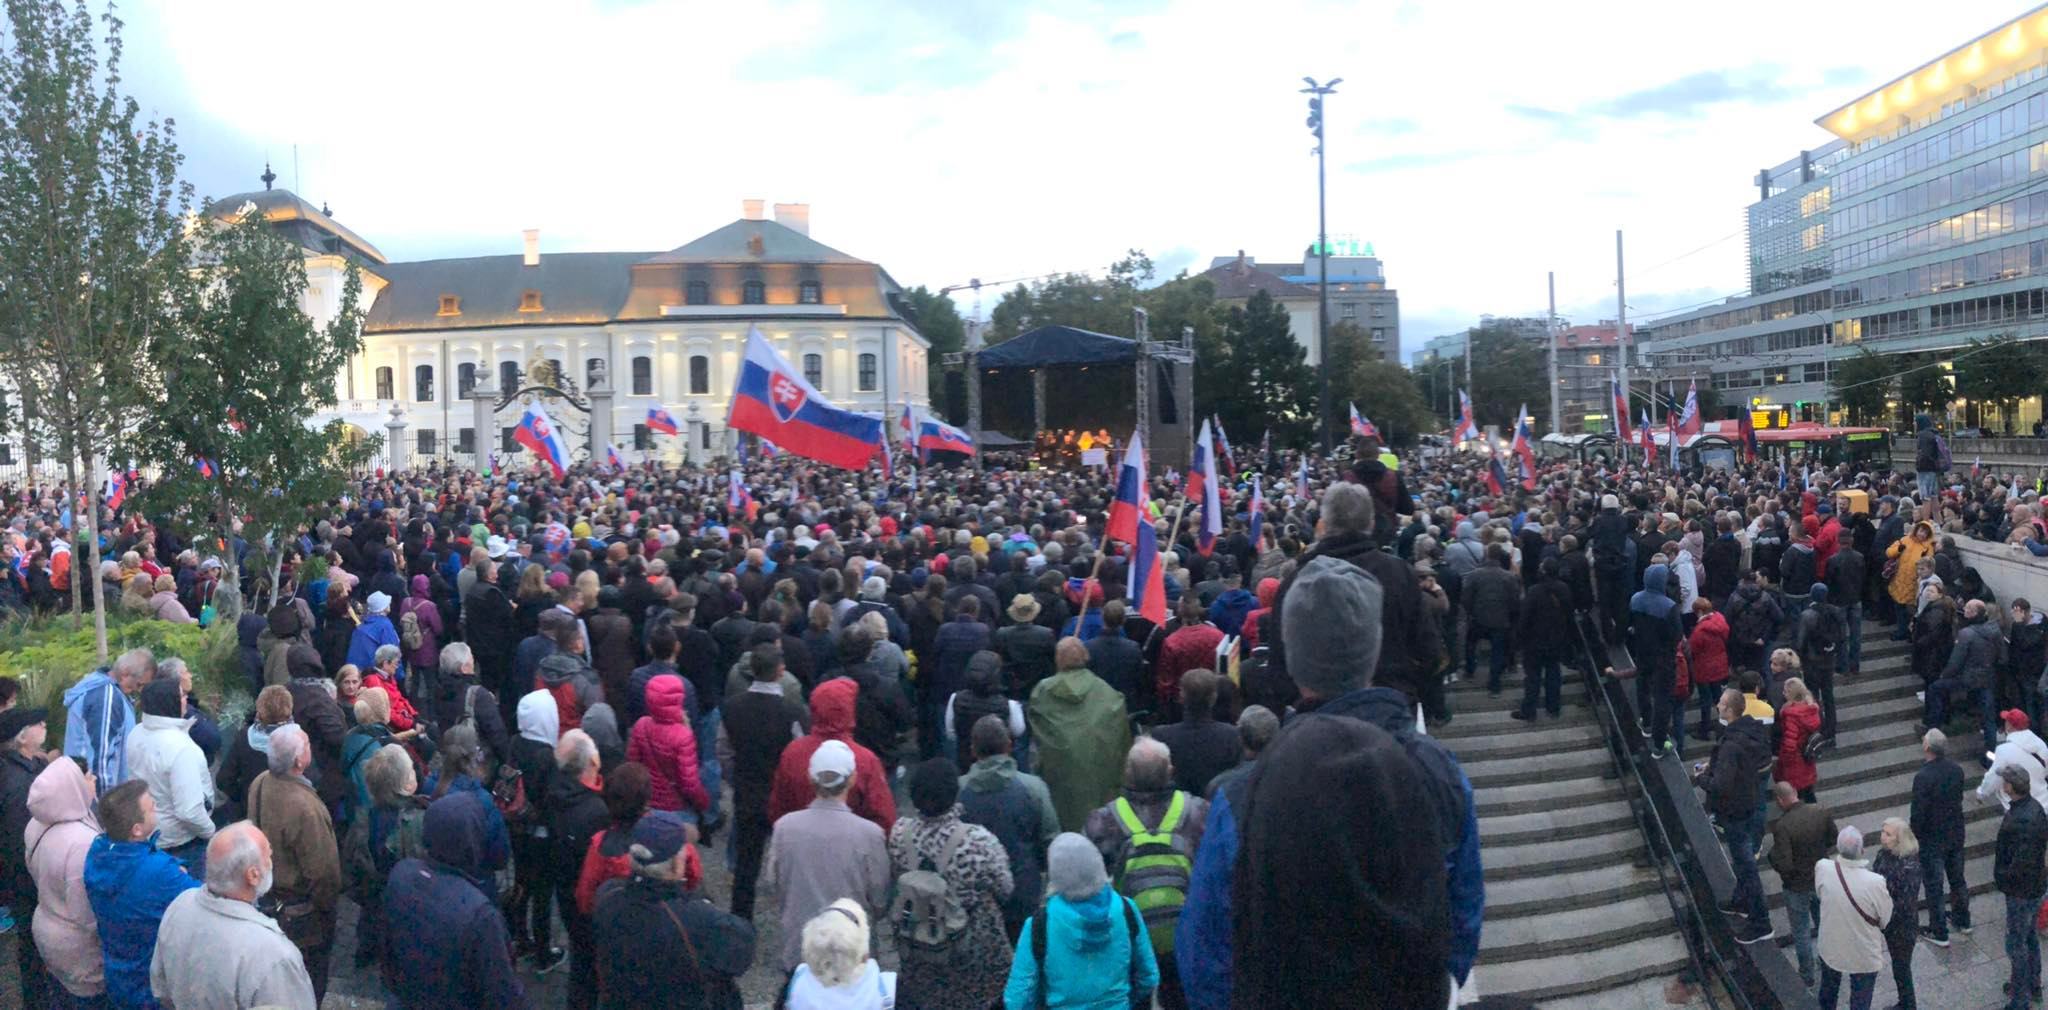 Protivládny protest v Bratislave!